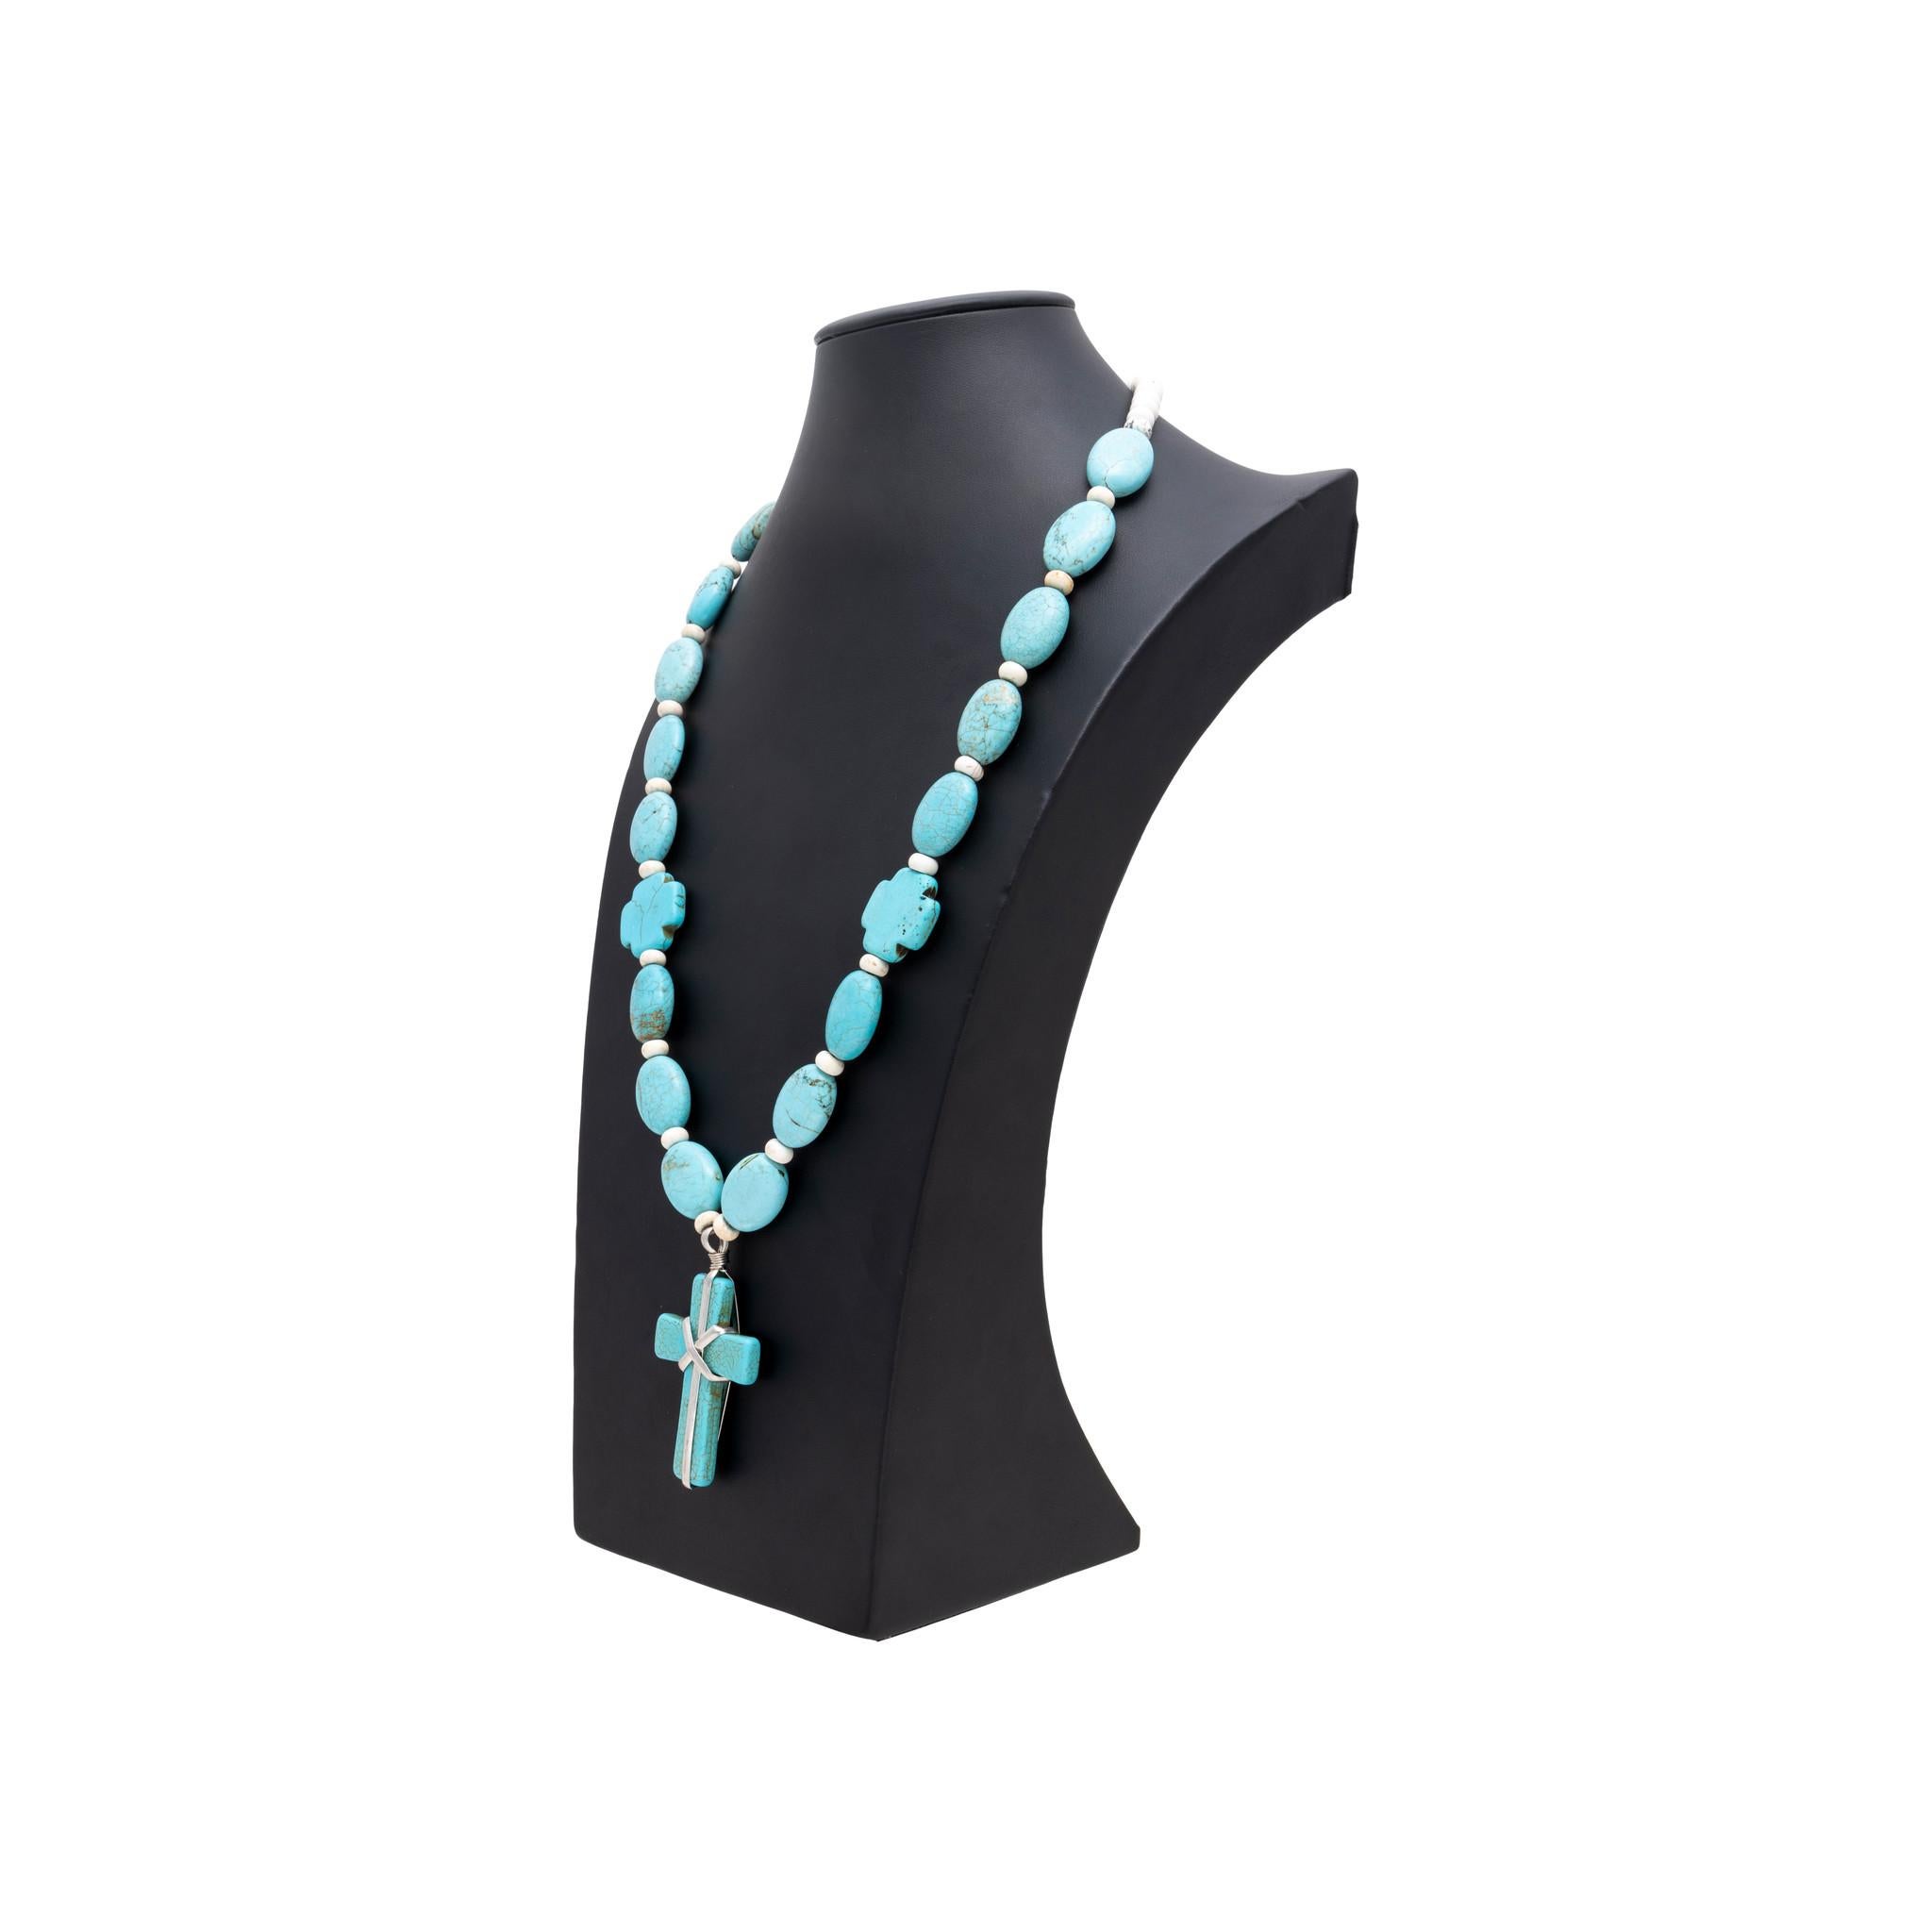 Türkisfarbene Halskette der amerikanischen Nacajo-Indianer. Ausgestattet mit einem großen Kreuzanhänger aus Sterling, der an einer Perlenkette befestigt ist. Die Perlen sind ebenfalls aus Türkis und haben eine längliche Form. Jede türkisfarbene